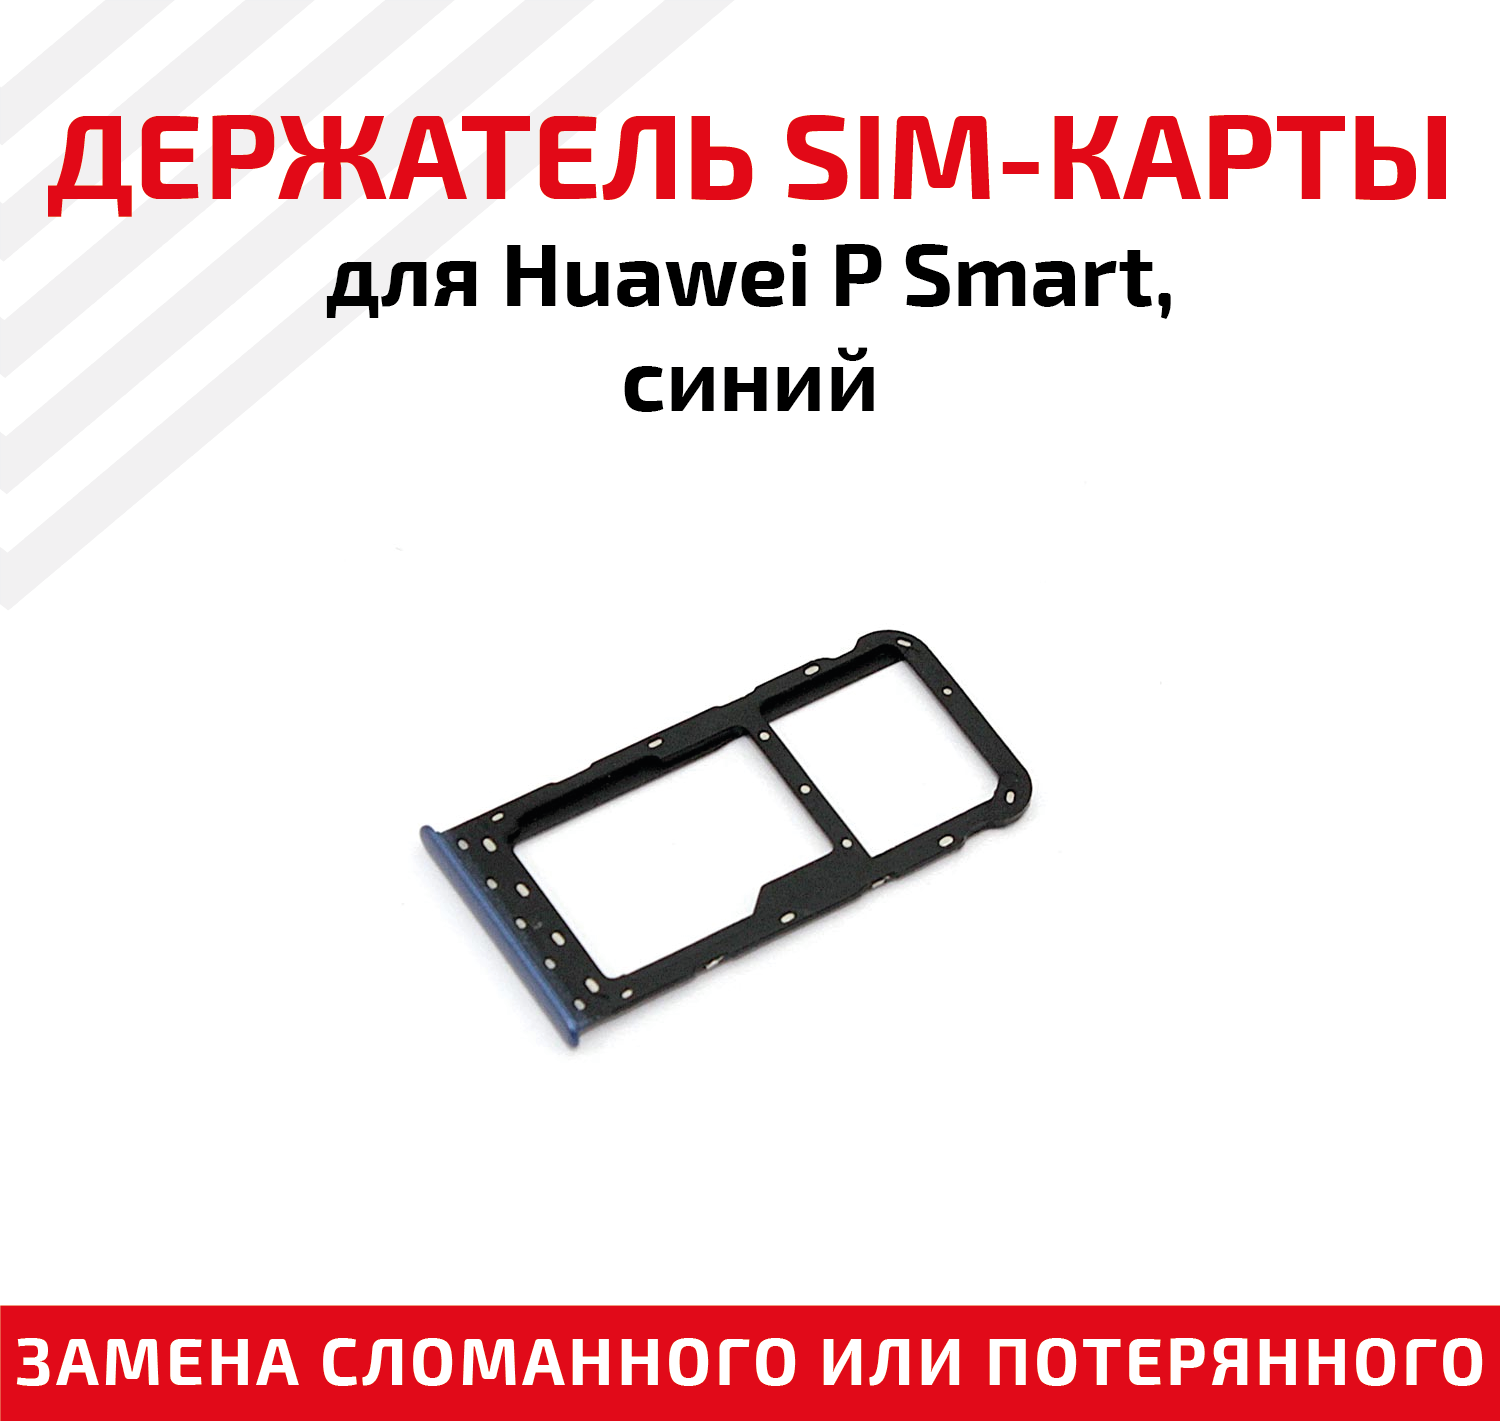 Лоток (держатель, контейнер, слот) SIM-карты для мобильного телефона (смартфона) Huawei P Smart, синий